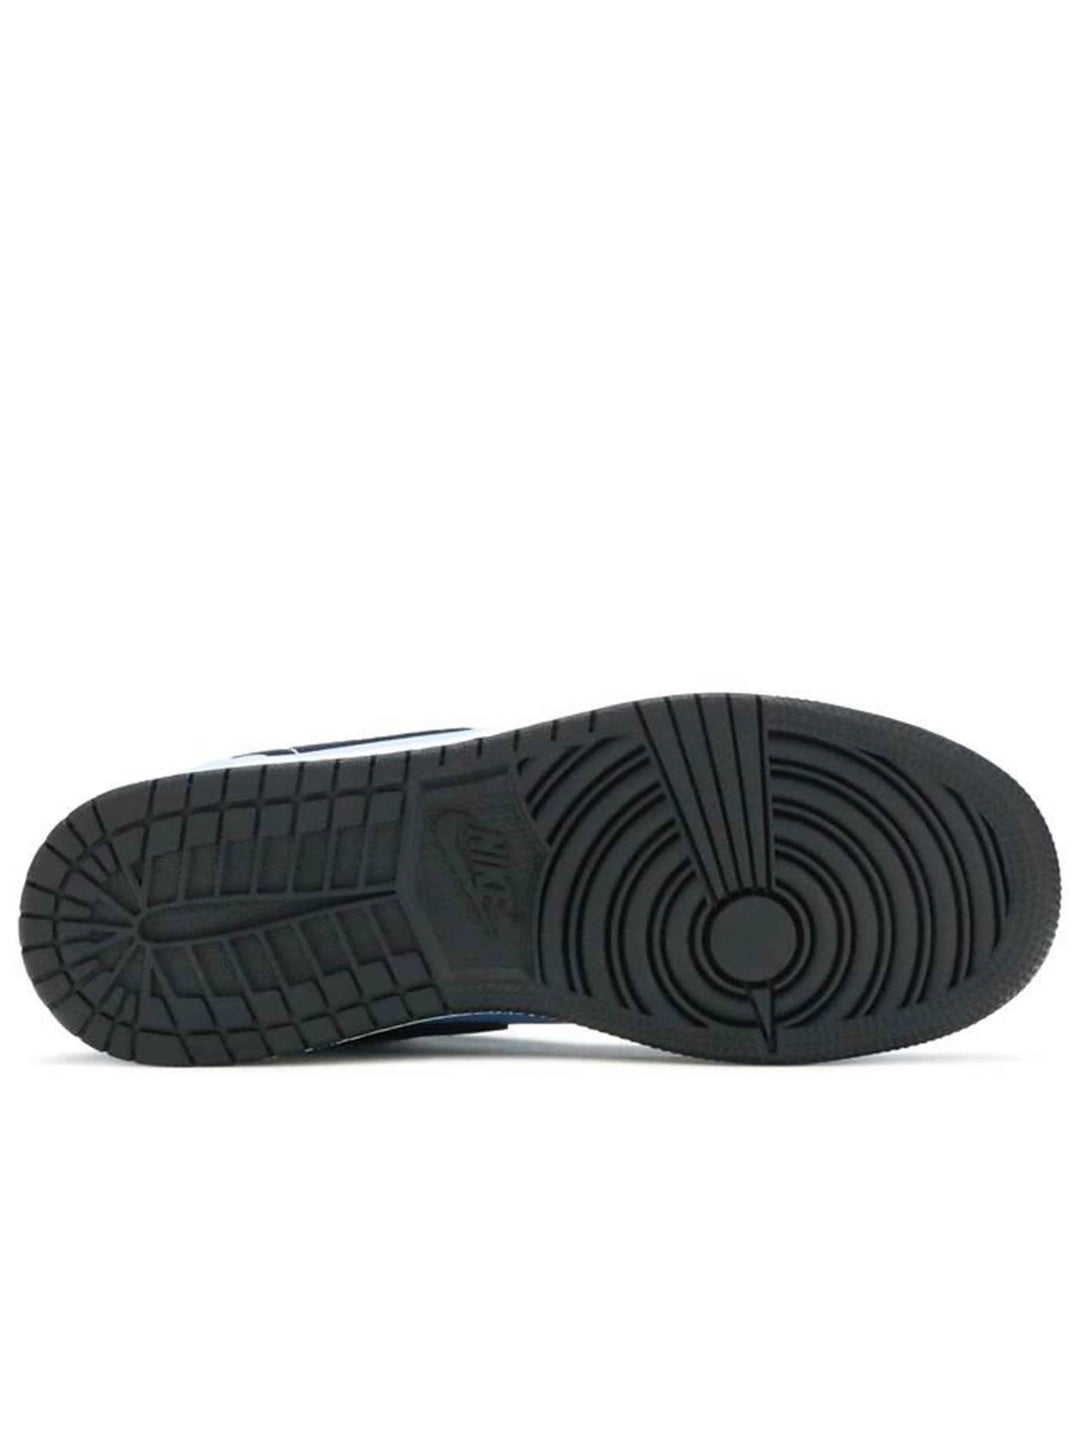 Nike Air Jordan 1 Low UNC Black Prior